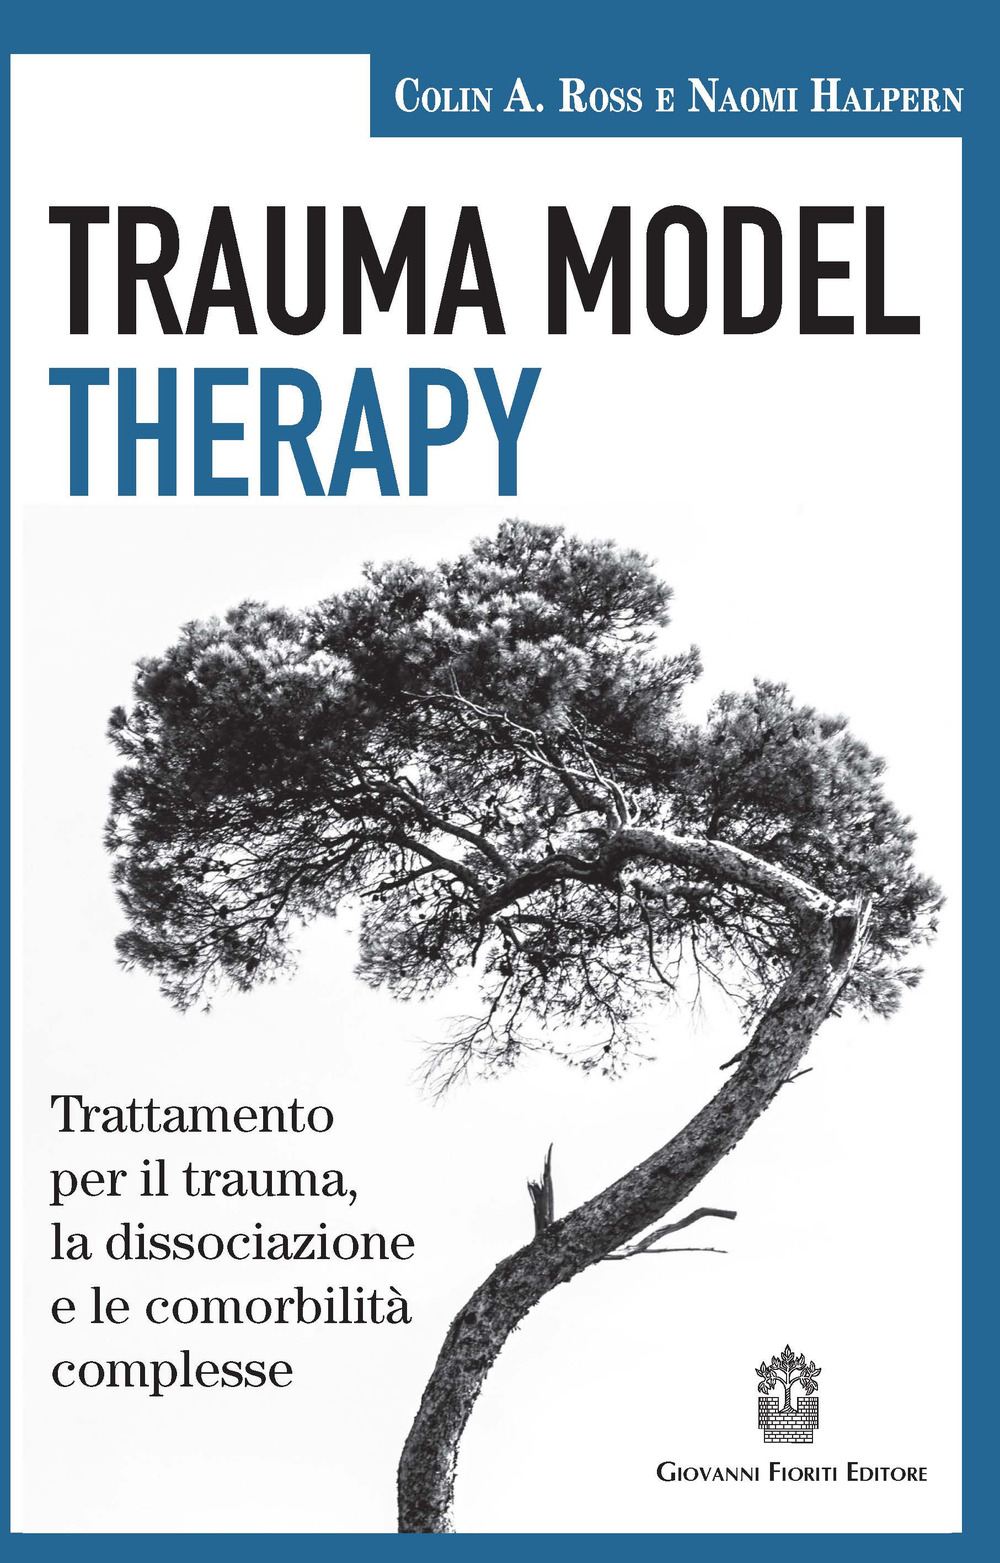 Trauma model therapy. Trattamento per il trauma, la dissociazione e le comorbilità complesse